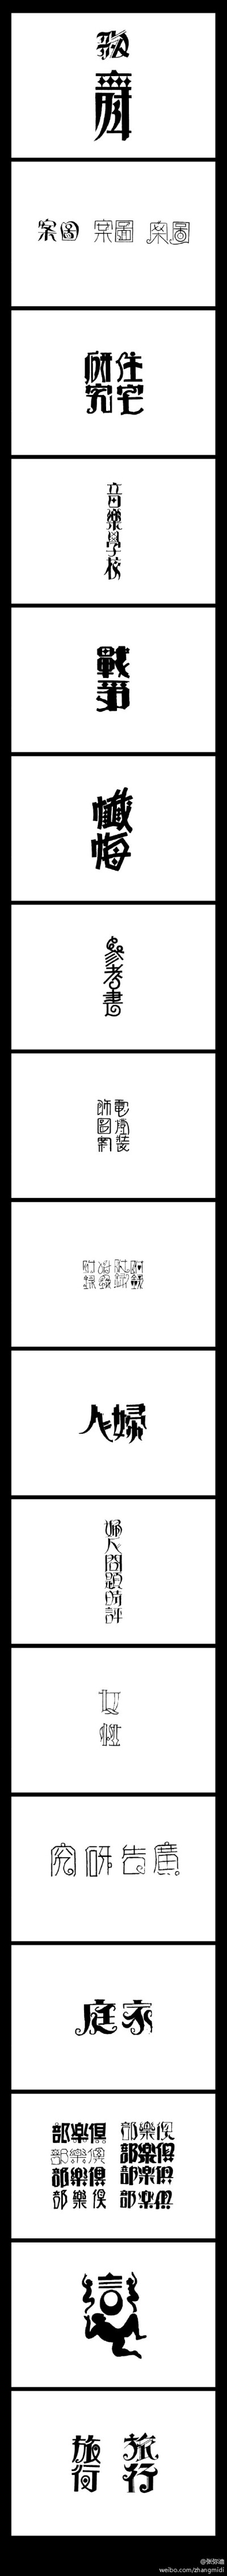 20世纪30年代中文字体设计选辑